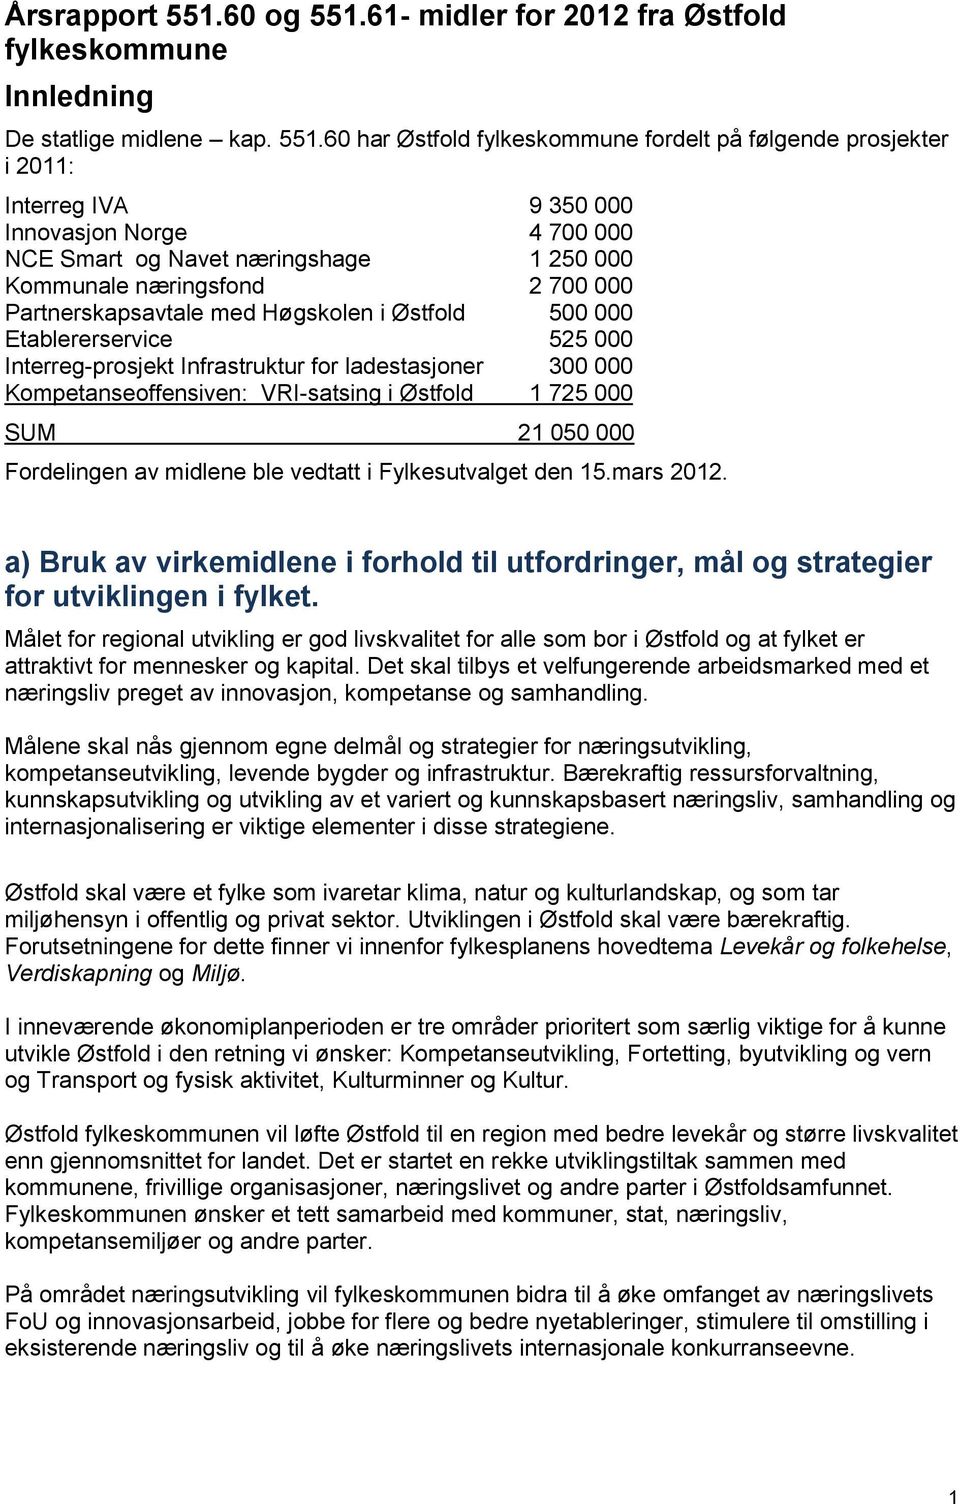 61- midler for 2012 fra Østfold fylkeskommune Innledning De statlige midlene kap. 551.